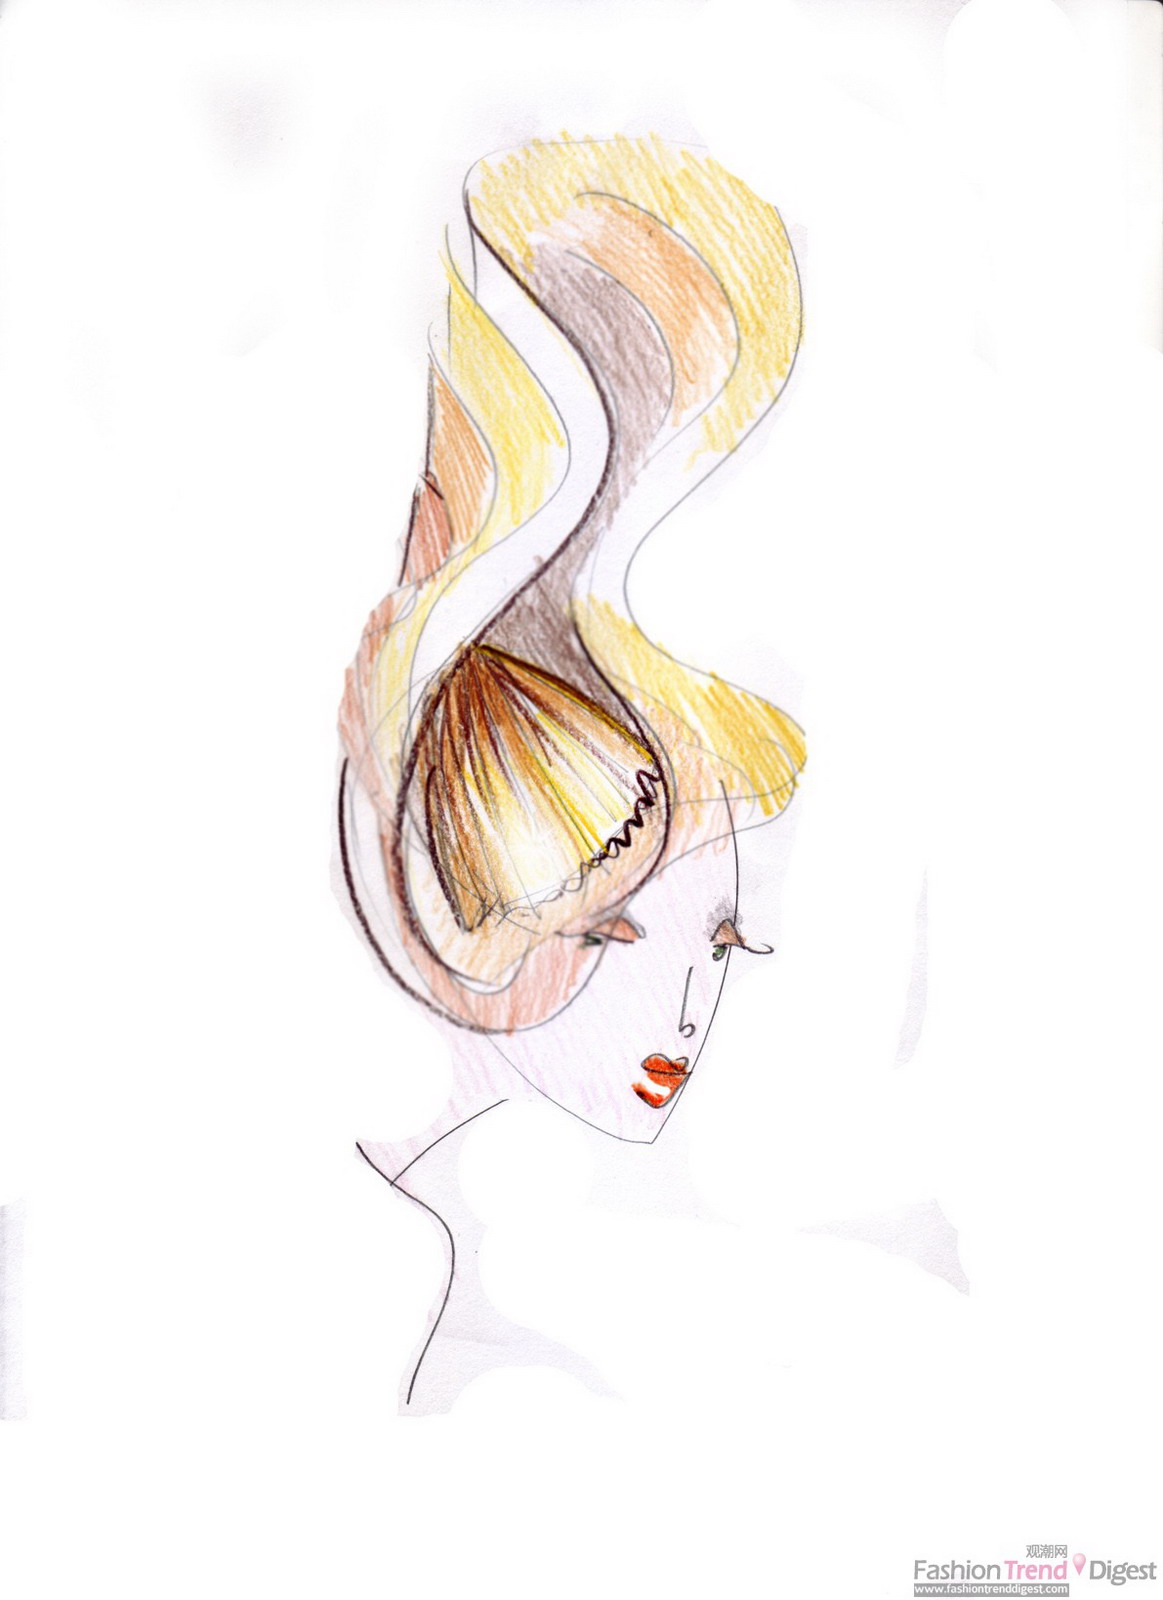 31 斯蒂芬•琼斯，Ingot, 2011年5月。褶皱丝质带有尼龙薄纱叠层的帽子。由斯蒂芬•琼斯为Salvatore Ferragamo博物馆制作。 